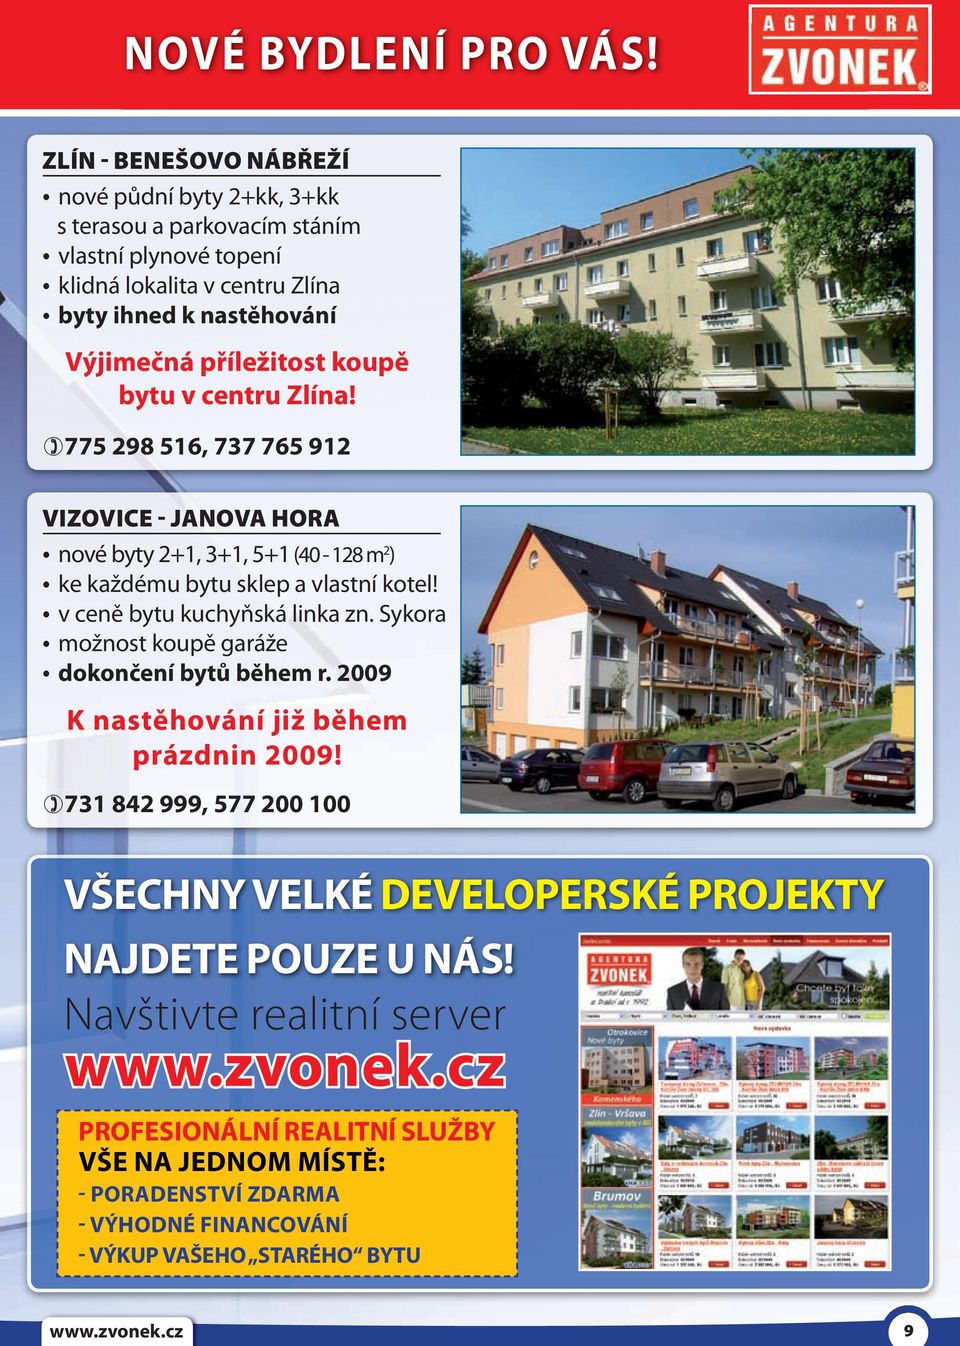 příležitost koupě bytu v centru Zlína! 775 298 516, 737 765 912 VIZOVICE - JANOVA HORA _nové byty 2+1, 3+1, 5+1 (40-128 m 2 ) _ke každému bytu sklep a vlastní kotel!